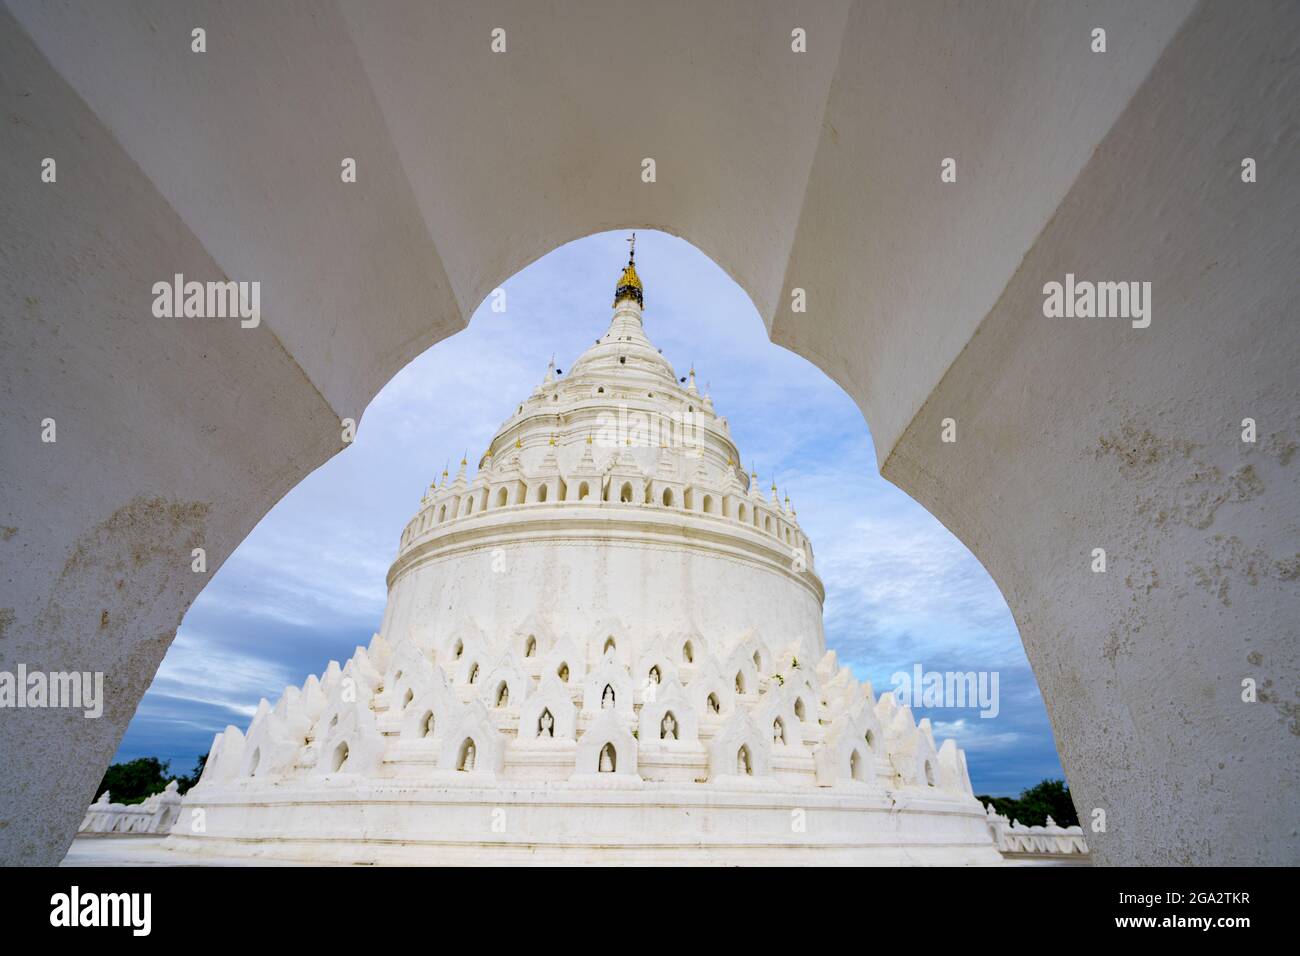 Blick durch den Eingangsbogen der Hsinphyume-Pagode (Mya Thein Tan Pagode), die weiß gestrichen ist und deren Design auf dem buddhistischen heiligen Berg basiert... Stockfoto